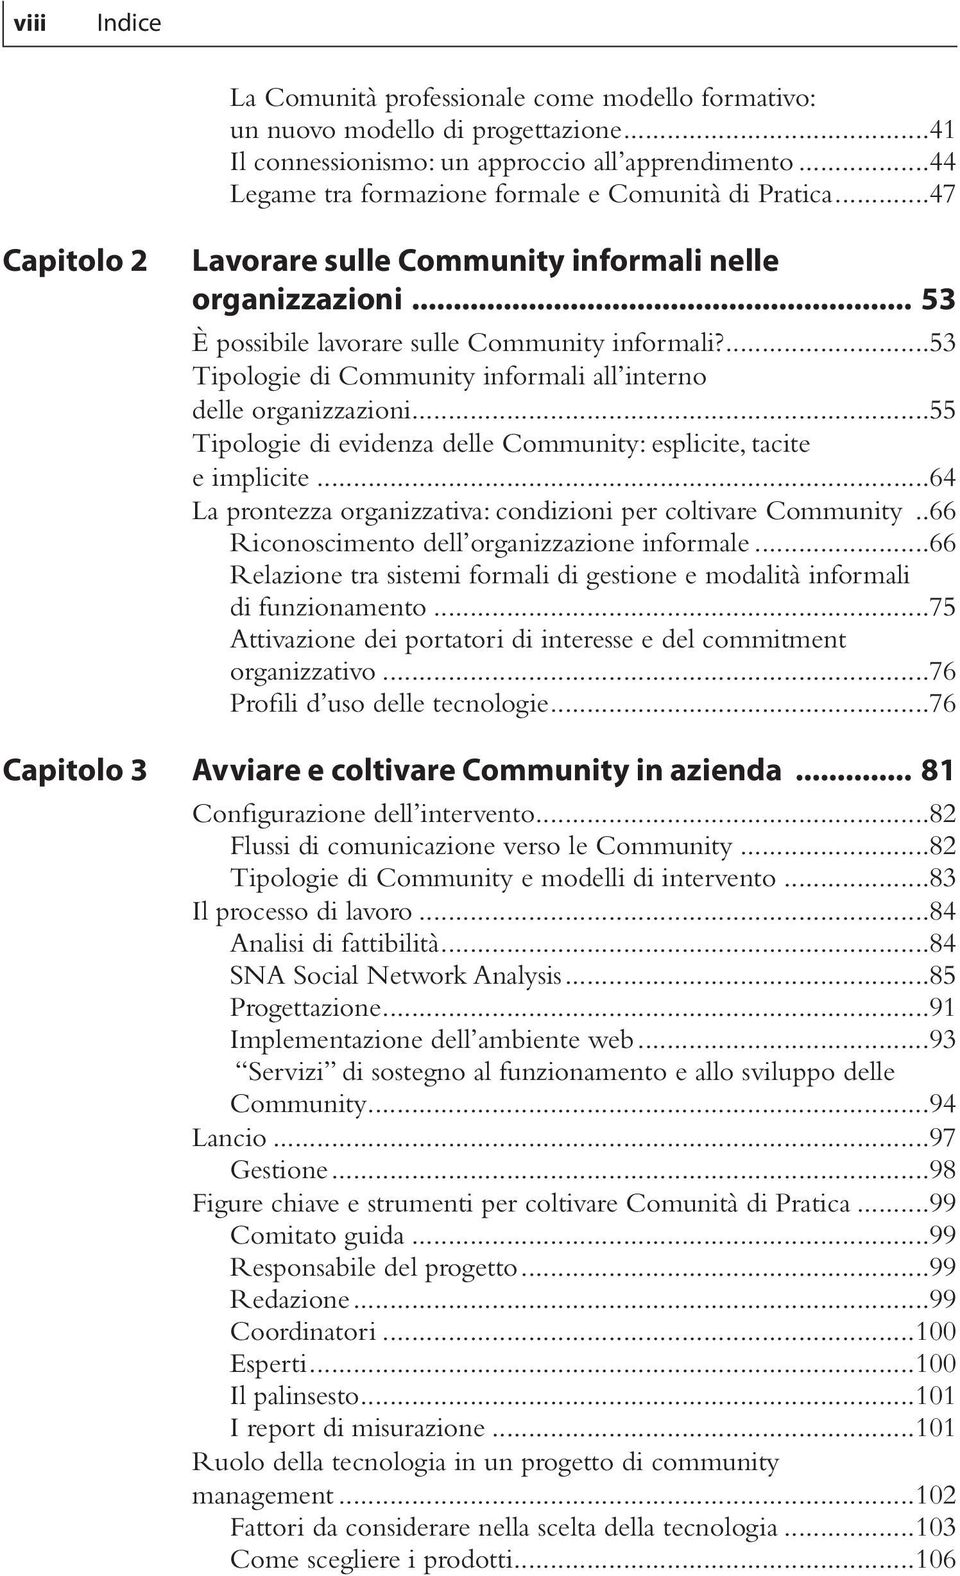 ...53 Tipologie di Community informali all interno delle organizzazioni...55 Tipologie di evidenza delle Community: esplicite, tacite e implicite.